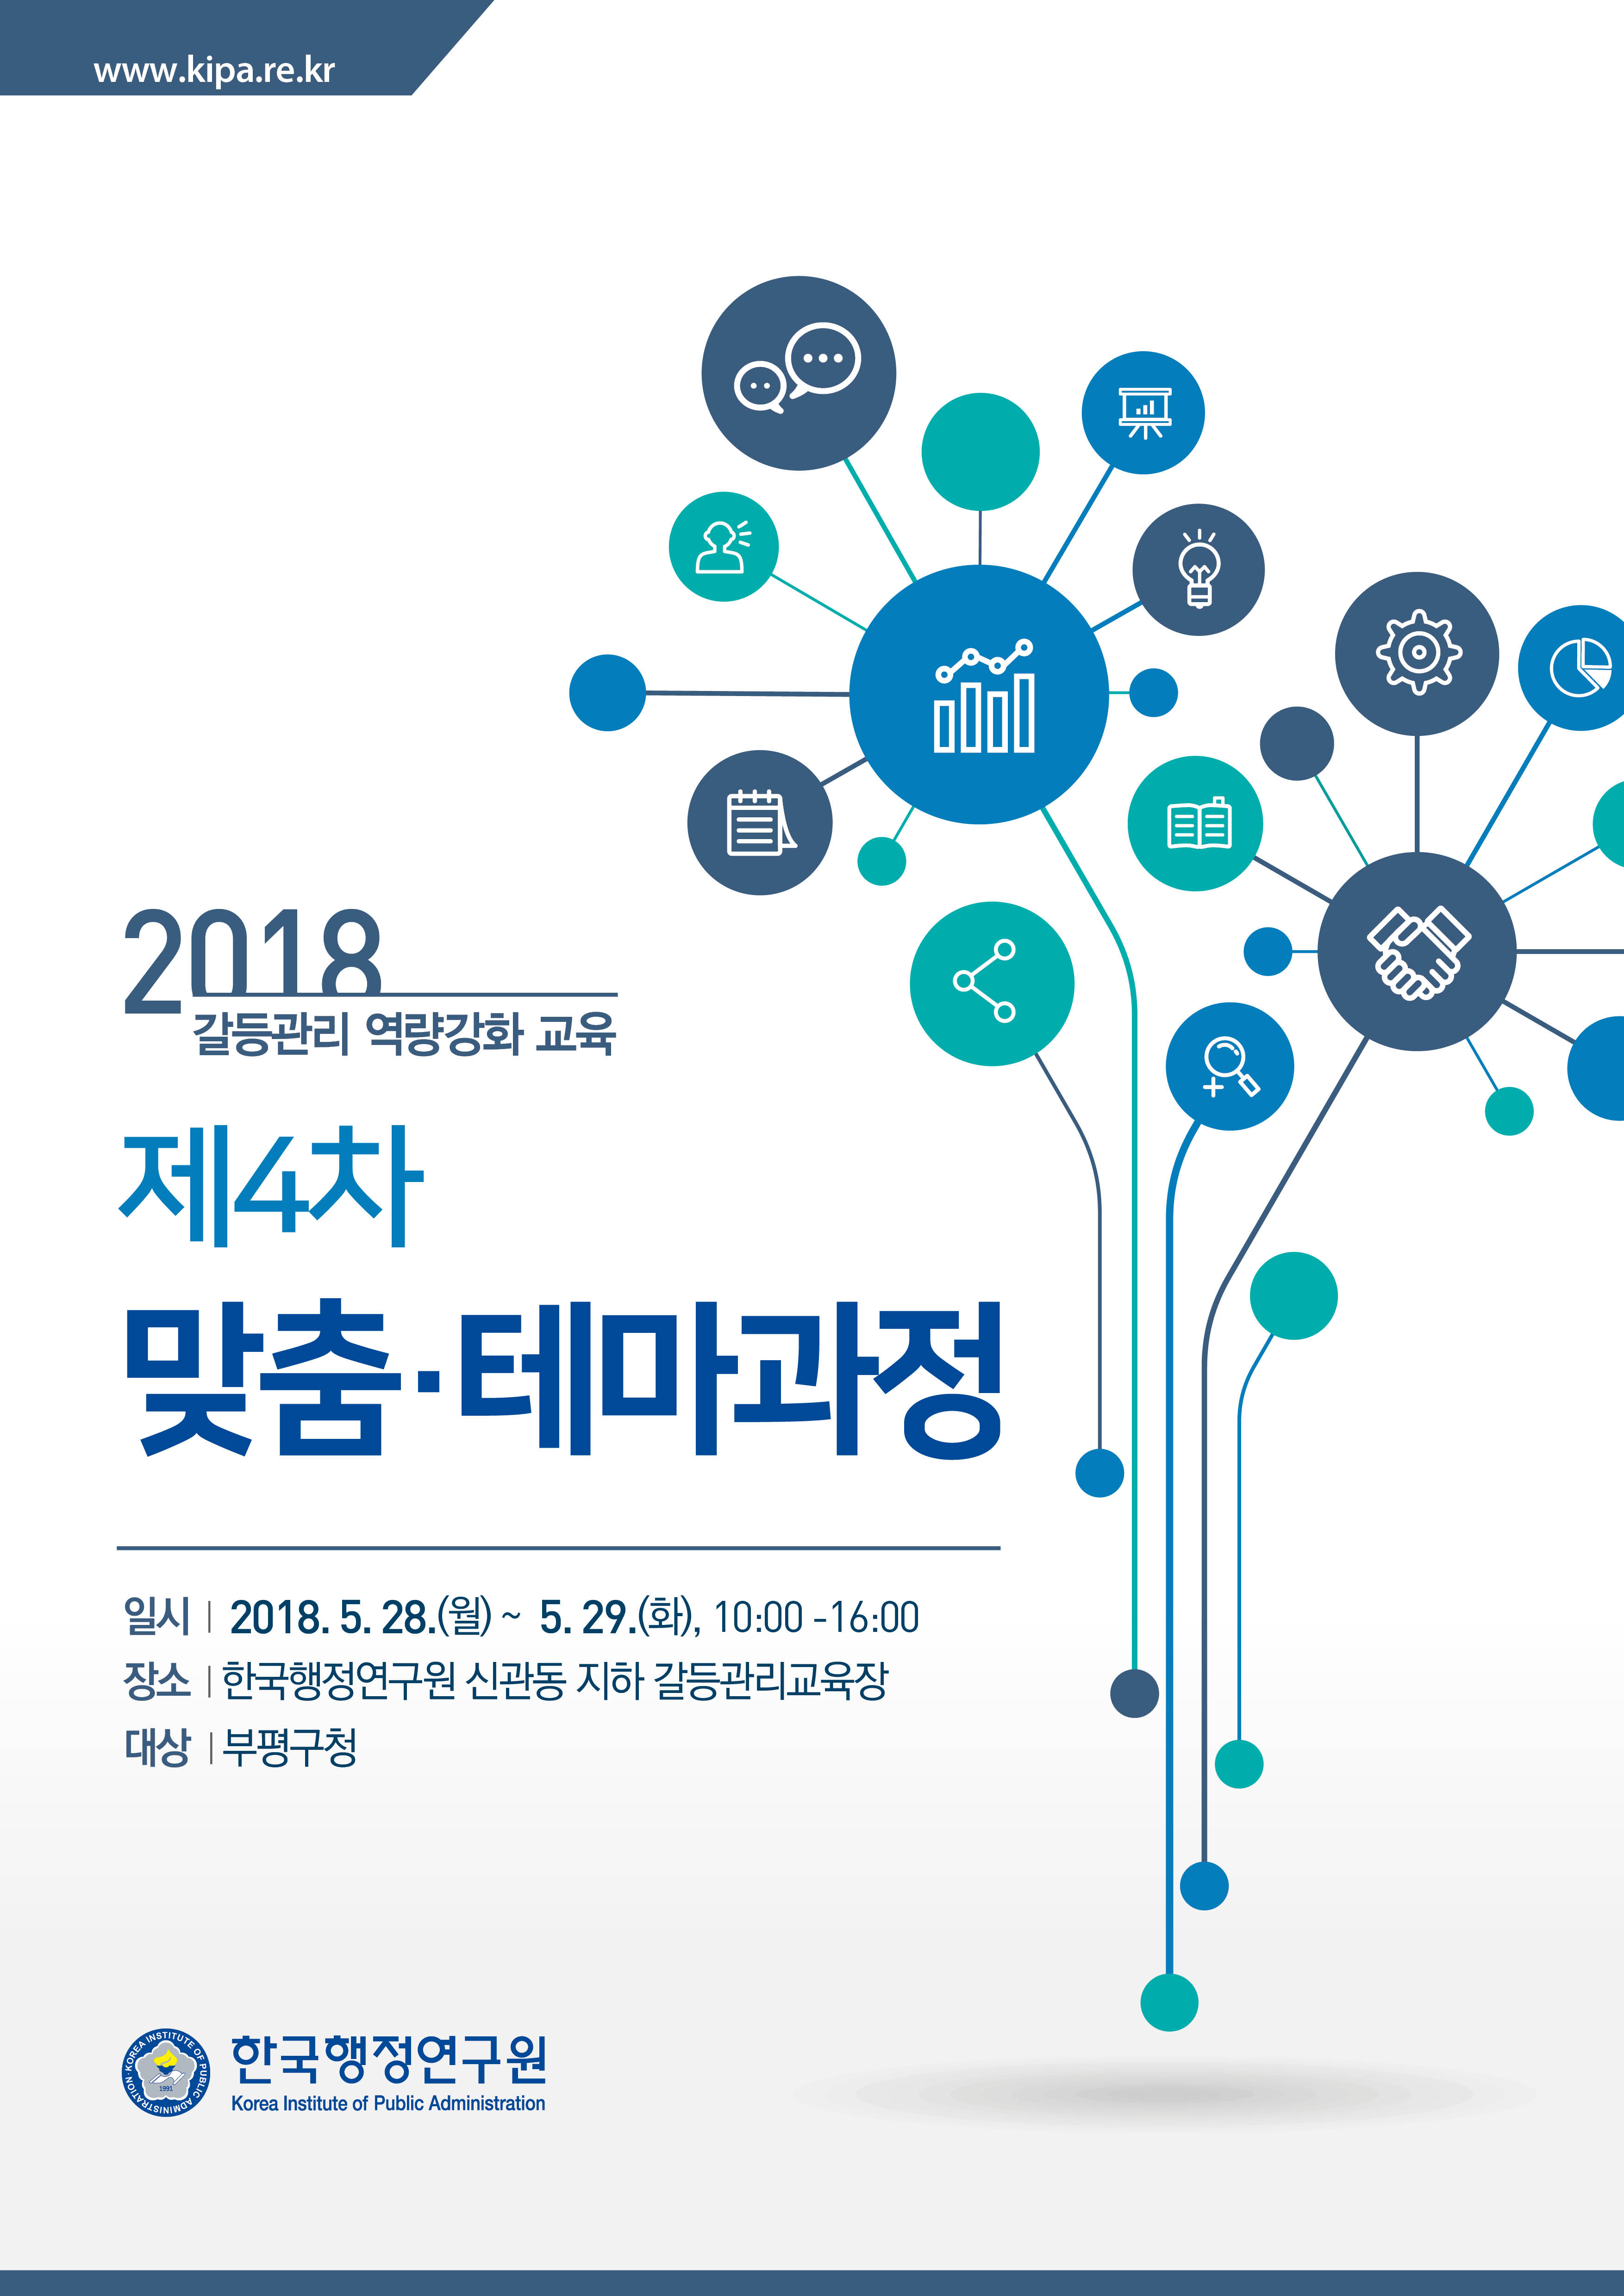 한국행정연구원은 사회통합연구실 주관으로 '갈등관리 역량강화 교육-제4차 맞춤·테마과정(부평구청)'을 개최한다. 